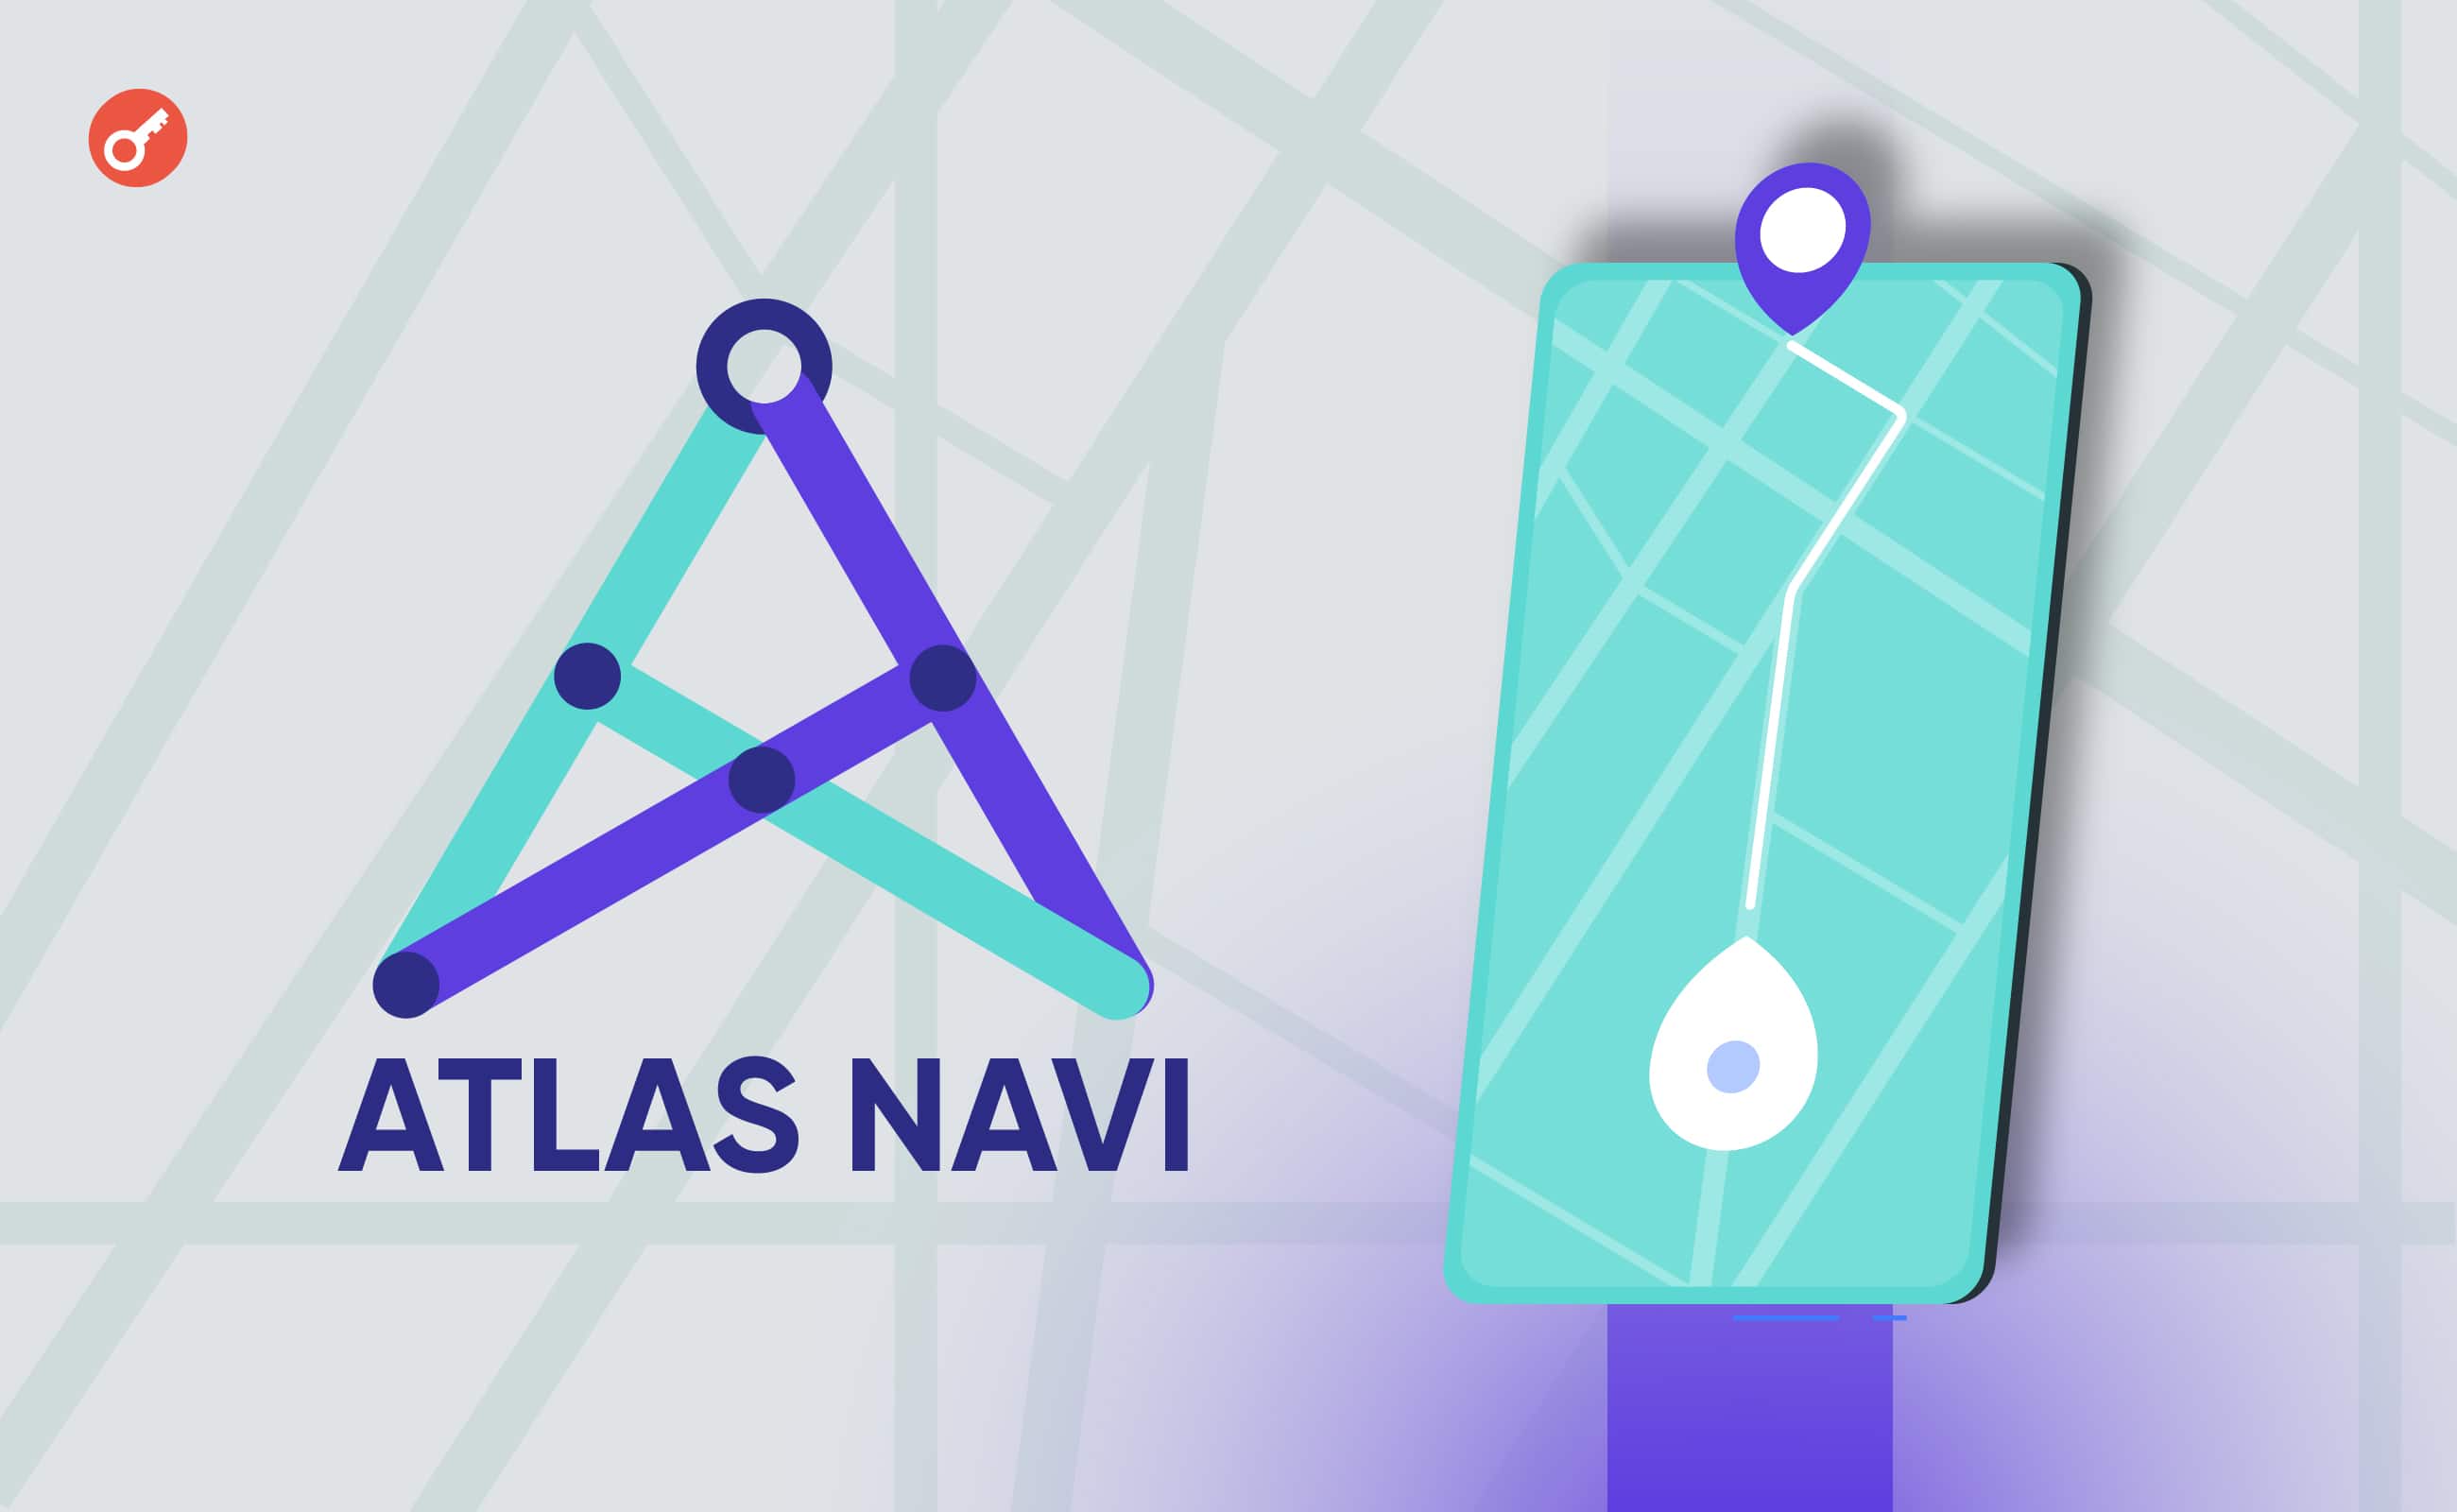 Atlas Navi представила ИИ-приложение для навигации с программой вознаграждений для водителей. Заглавный коллаж новости.